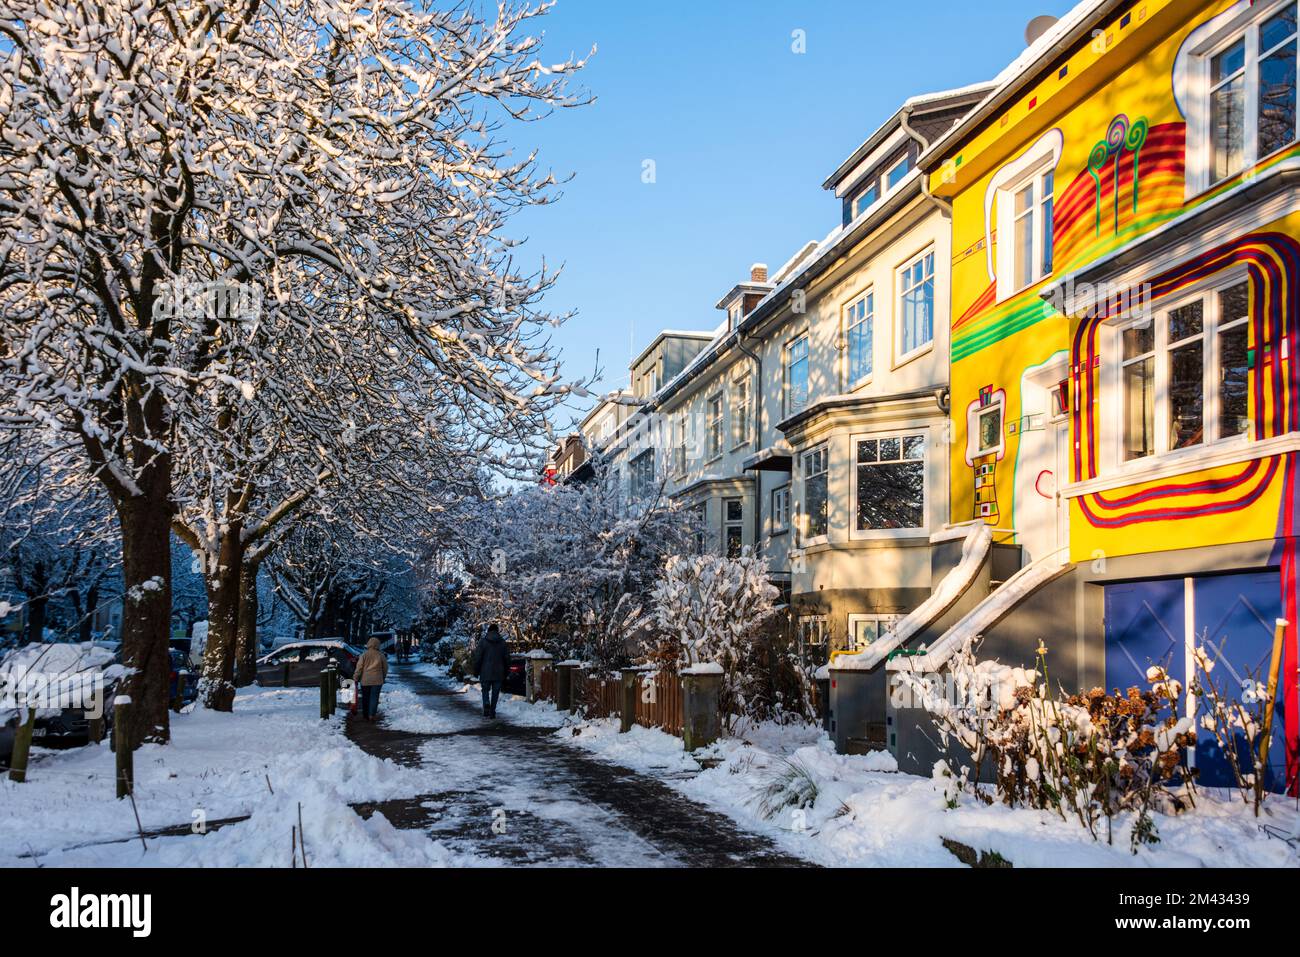 Bunte Häuserfassade mit verschneiten Bäumen im Dezember Foto Stock